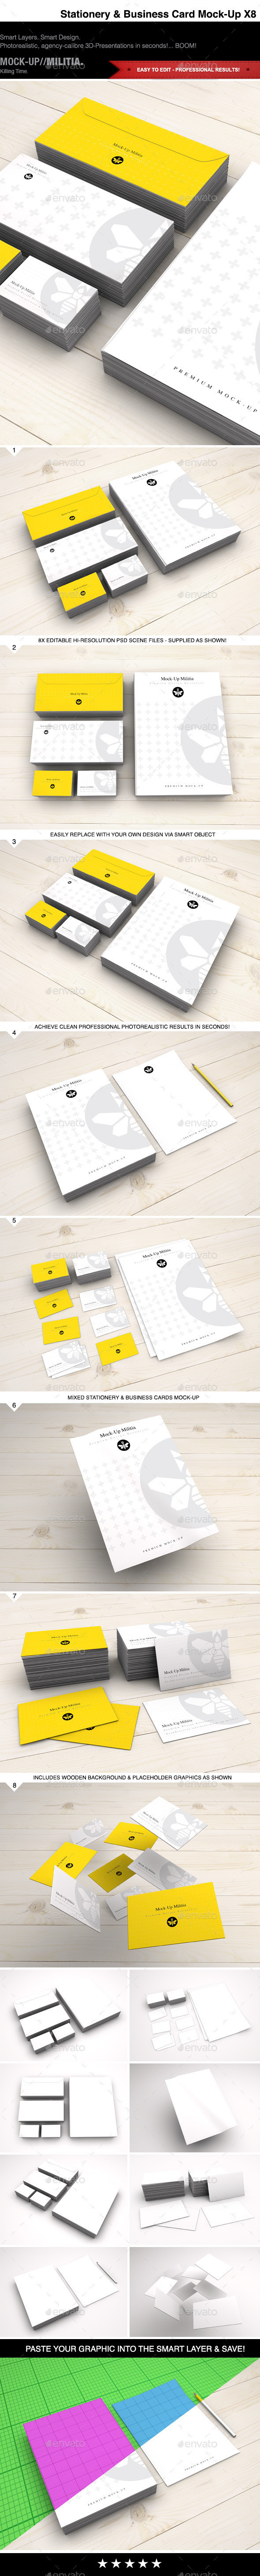 Branding stationery business card mock up prvw